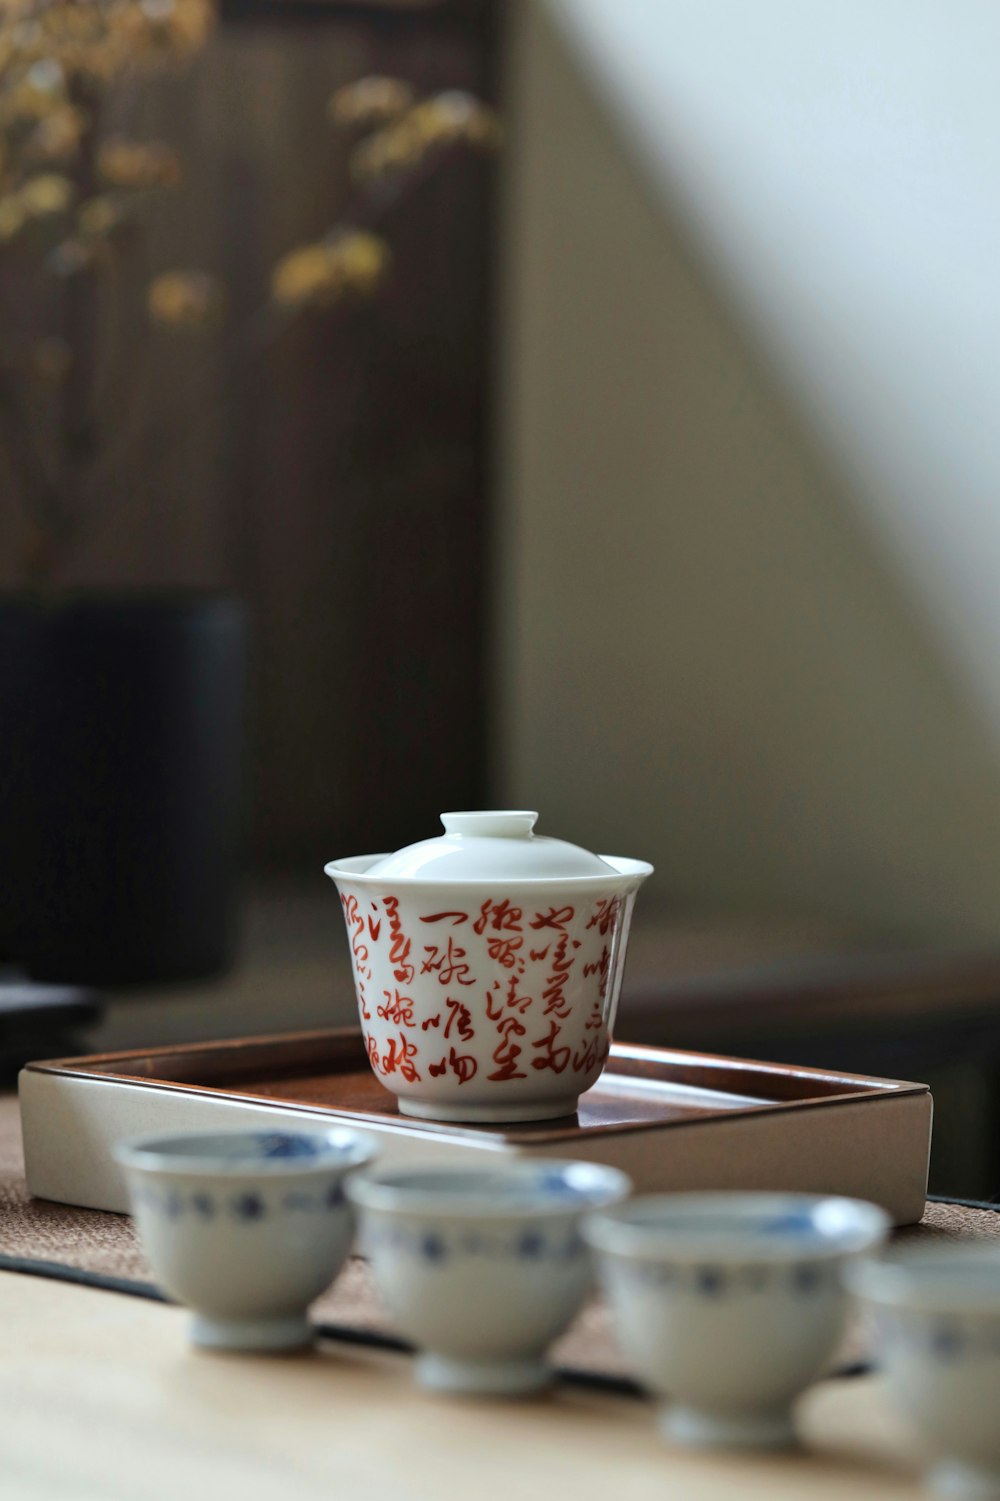 xícara de chá de cerâmica floral branca e vermelha no pires